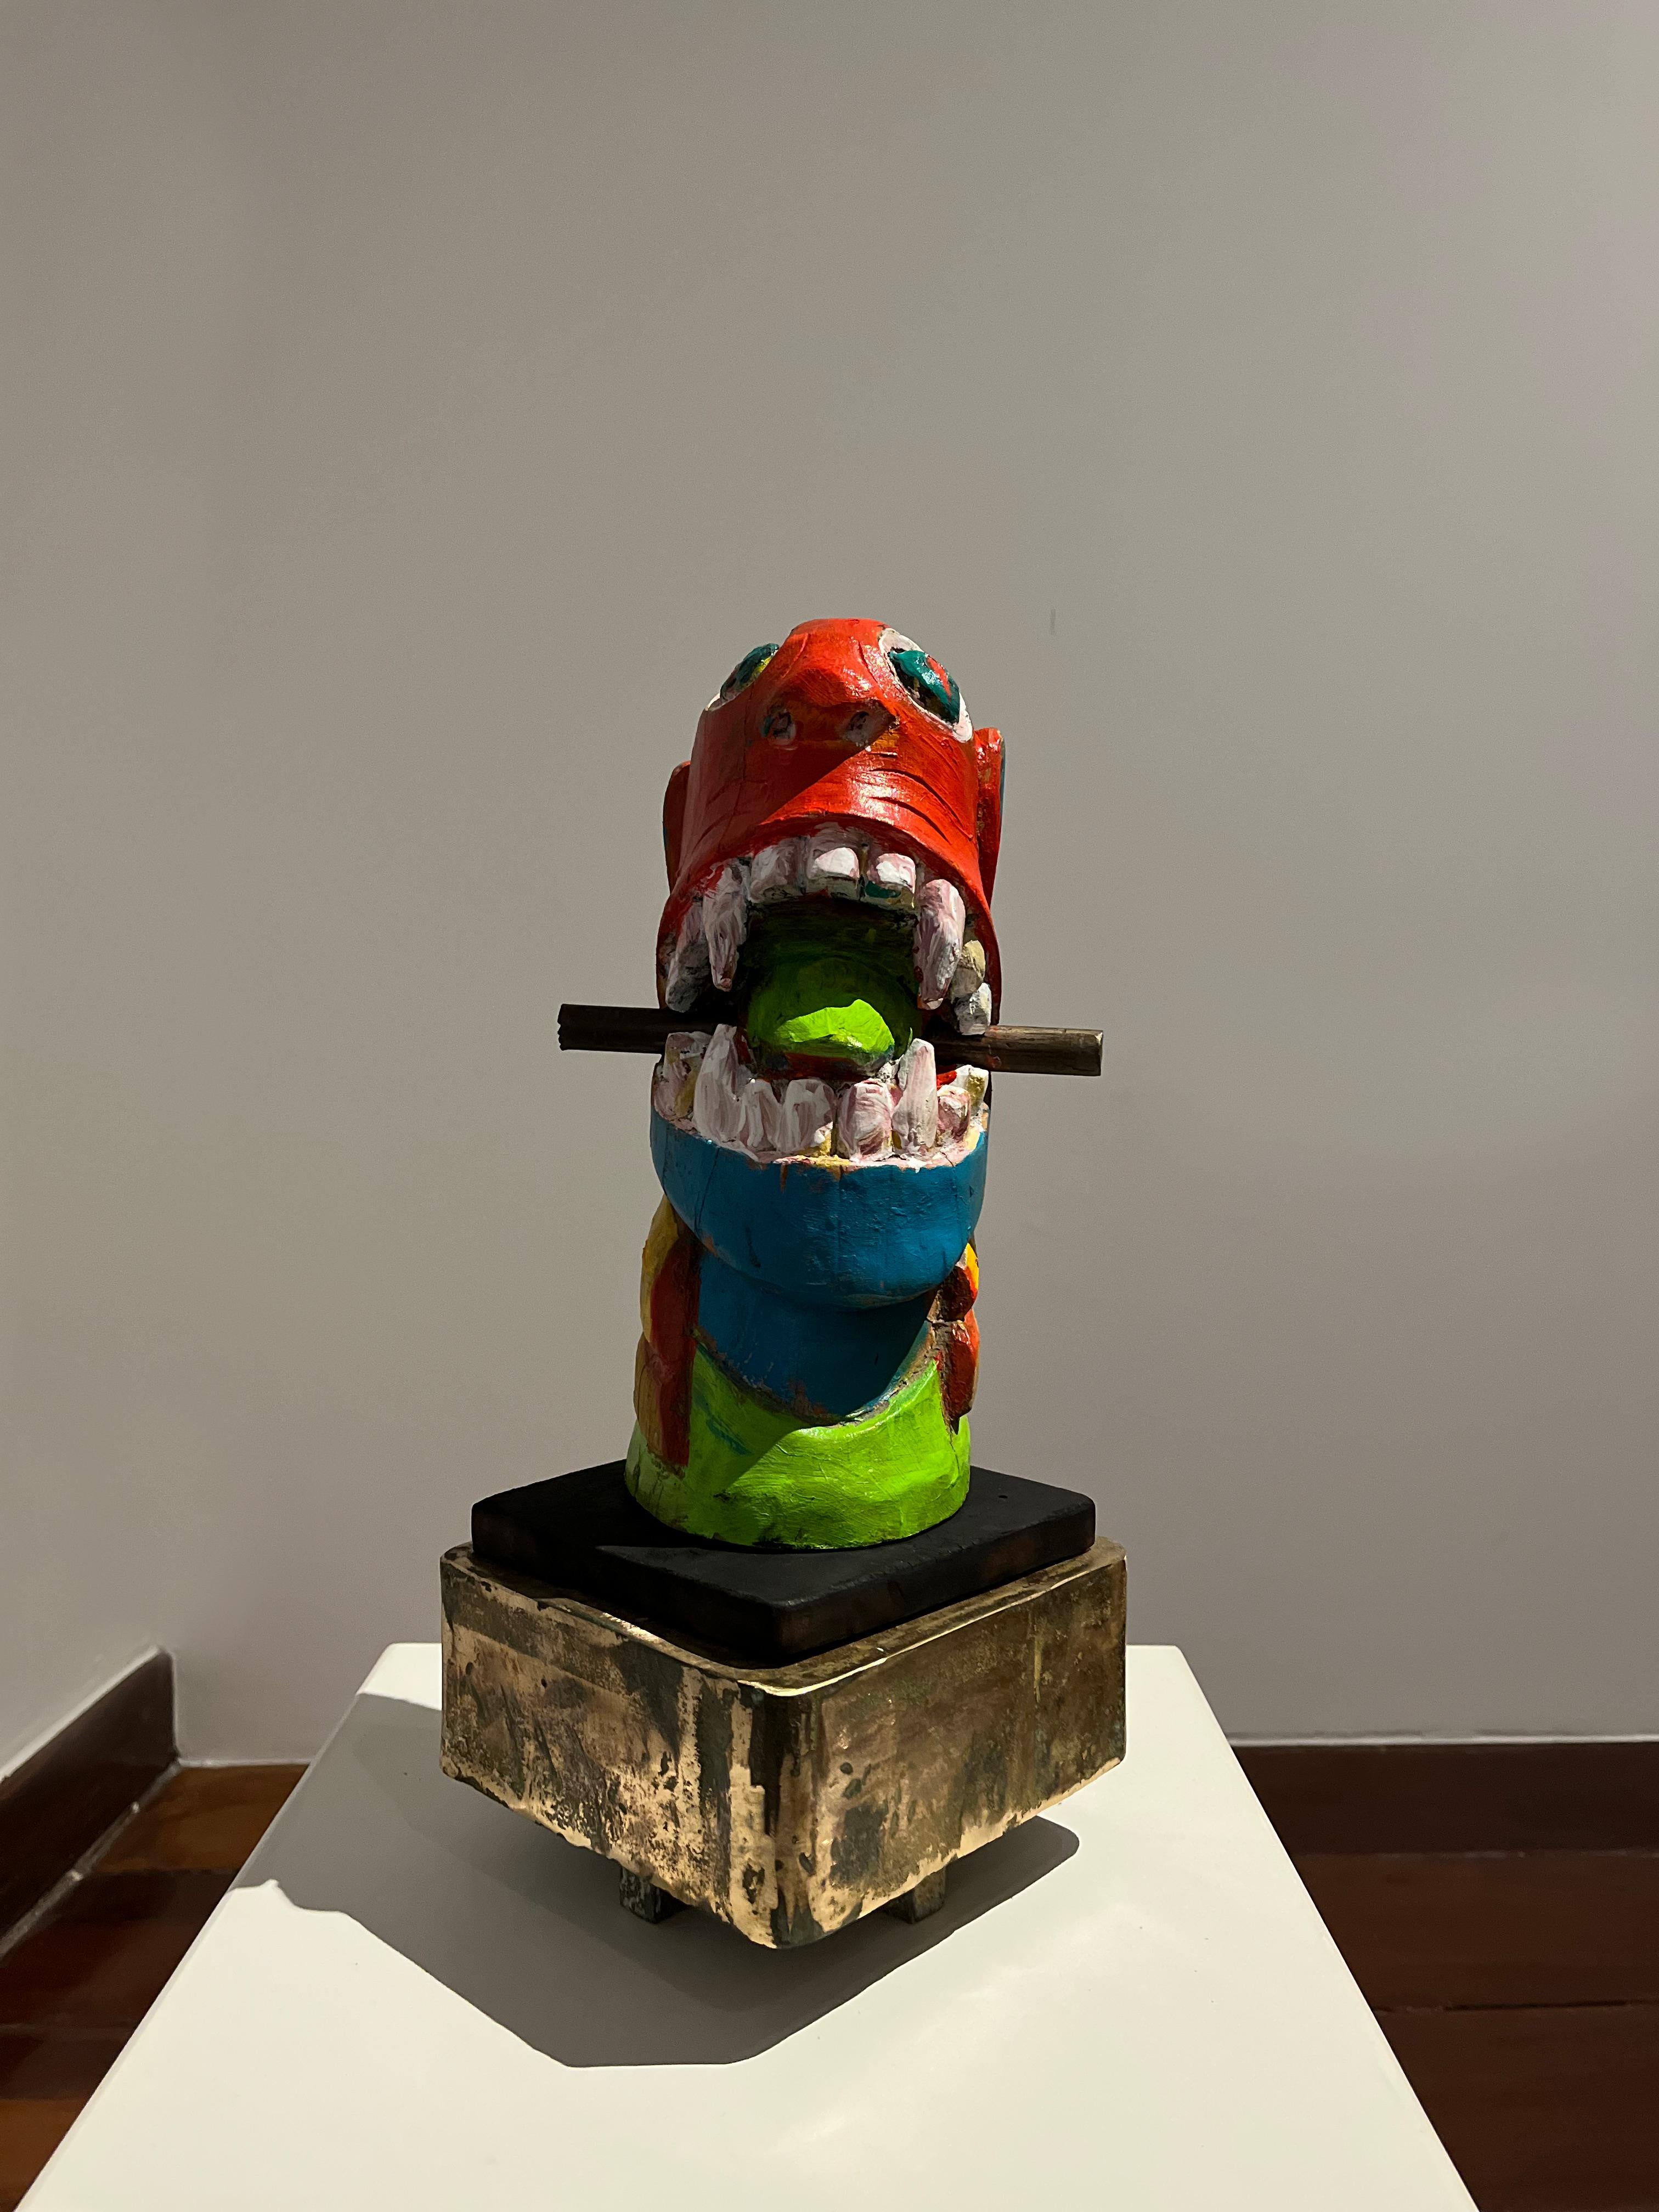 Apropriaçao frei de carranca, Figurative Sculpture. From the Series Sculptures For Sale 1